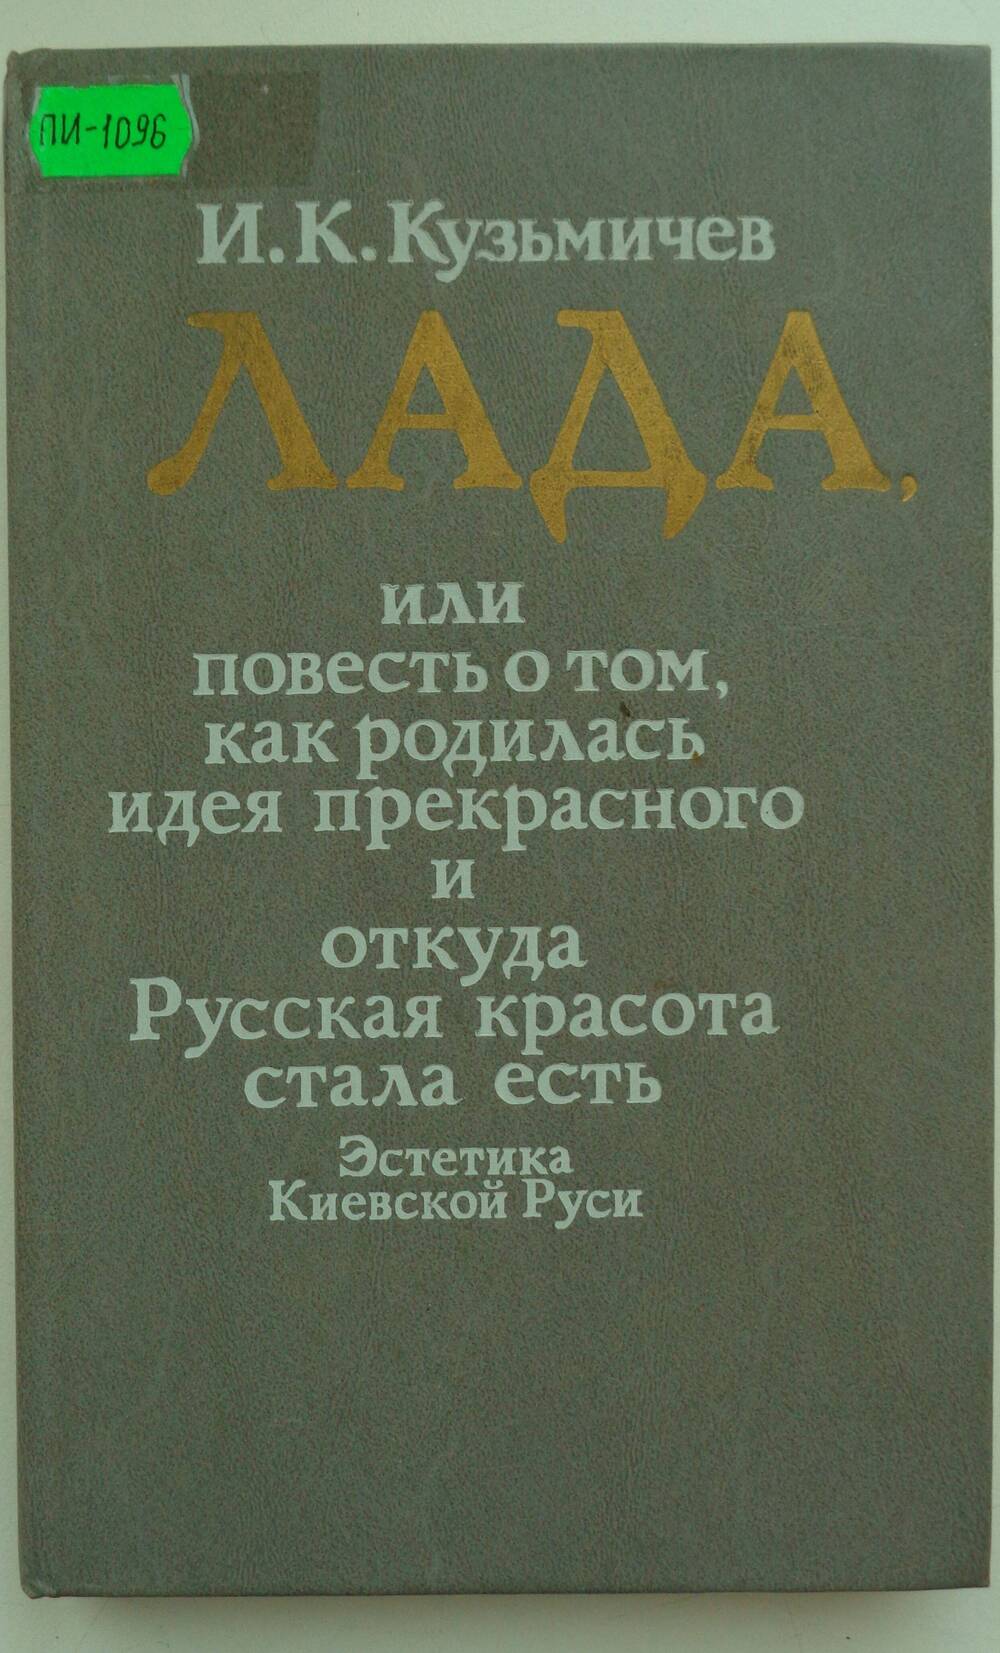 Книга. Кузьмичев И.К. Лада.- М.: Мол. Гвардия, 1990.-301 с.